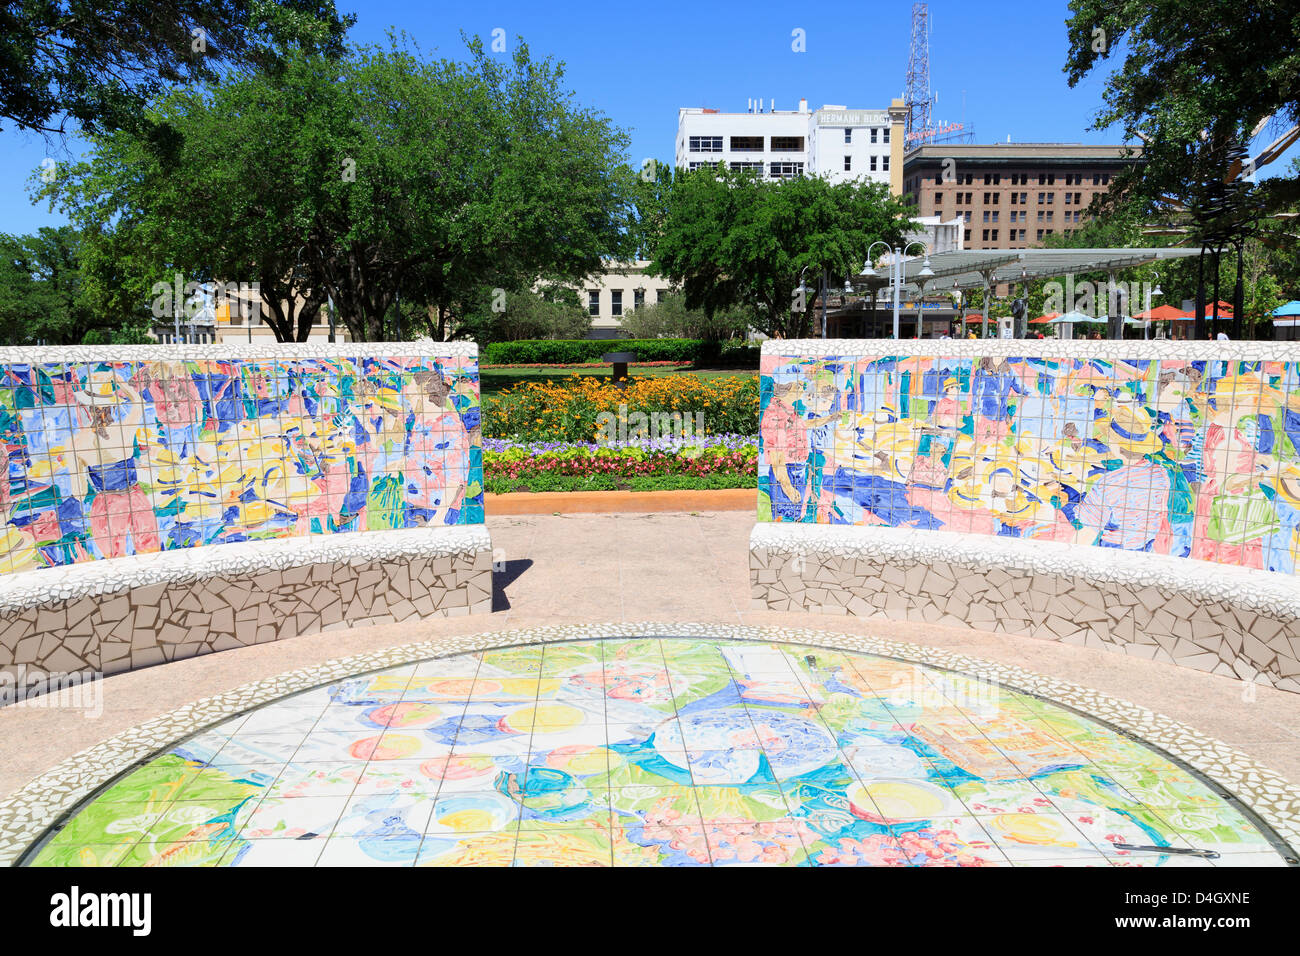 Tilework in Market Square Park, Houston, Texas, USA Stock Photo